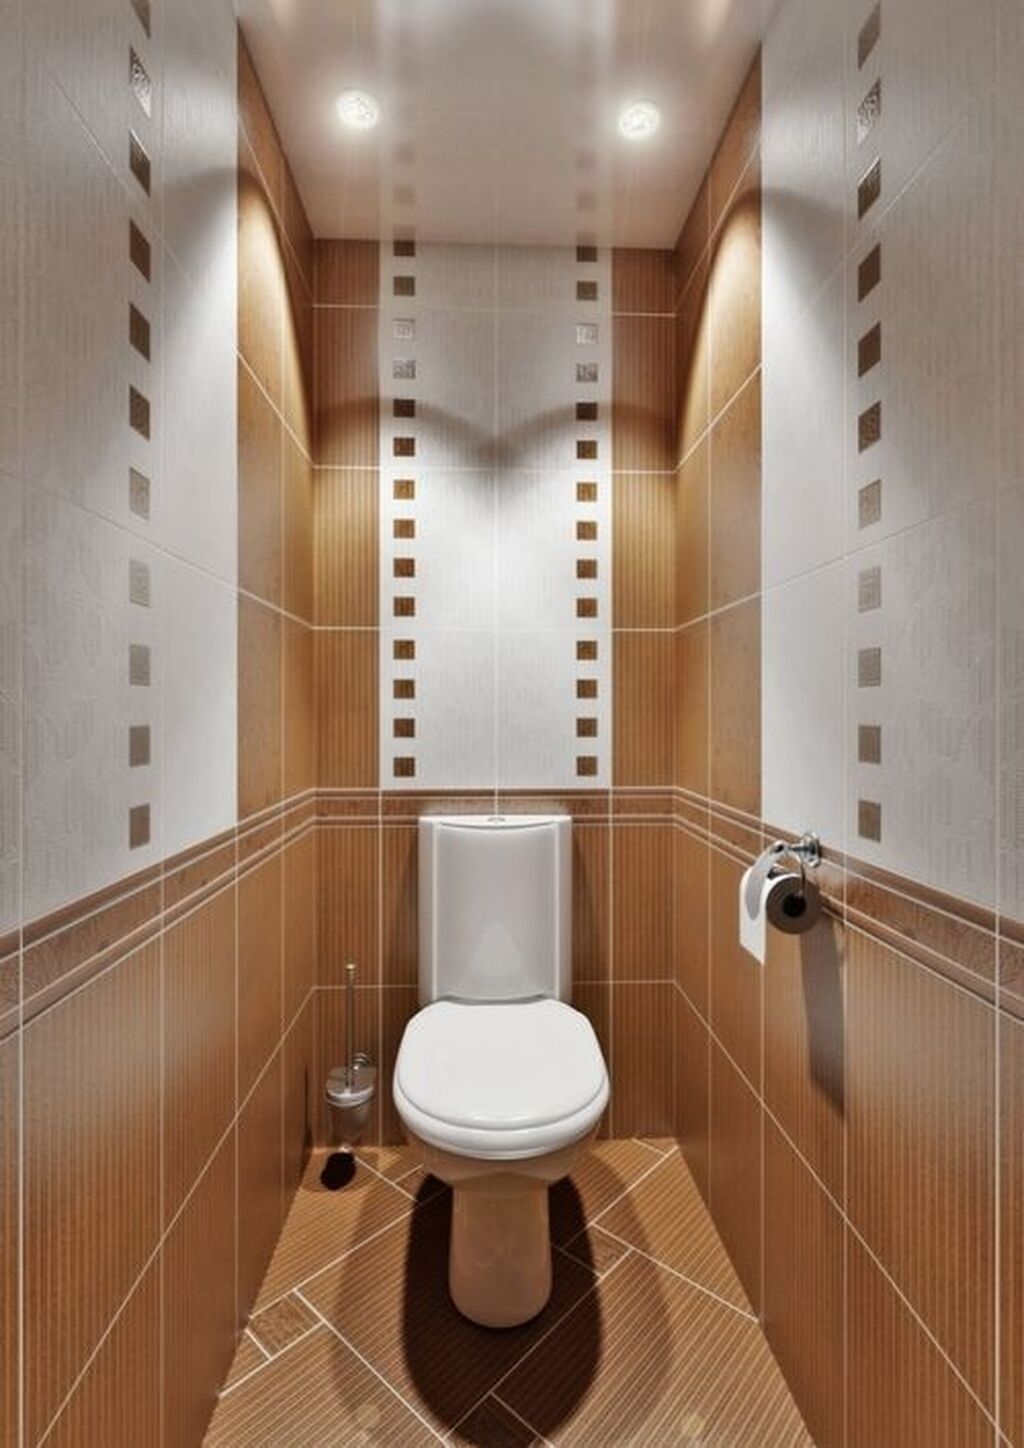 Дизайн в туалетной комнате маленького размера фото